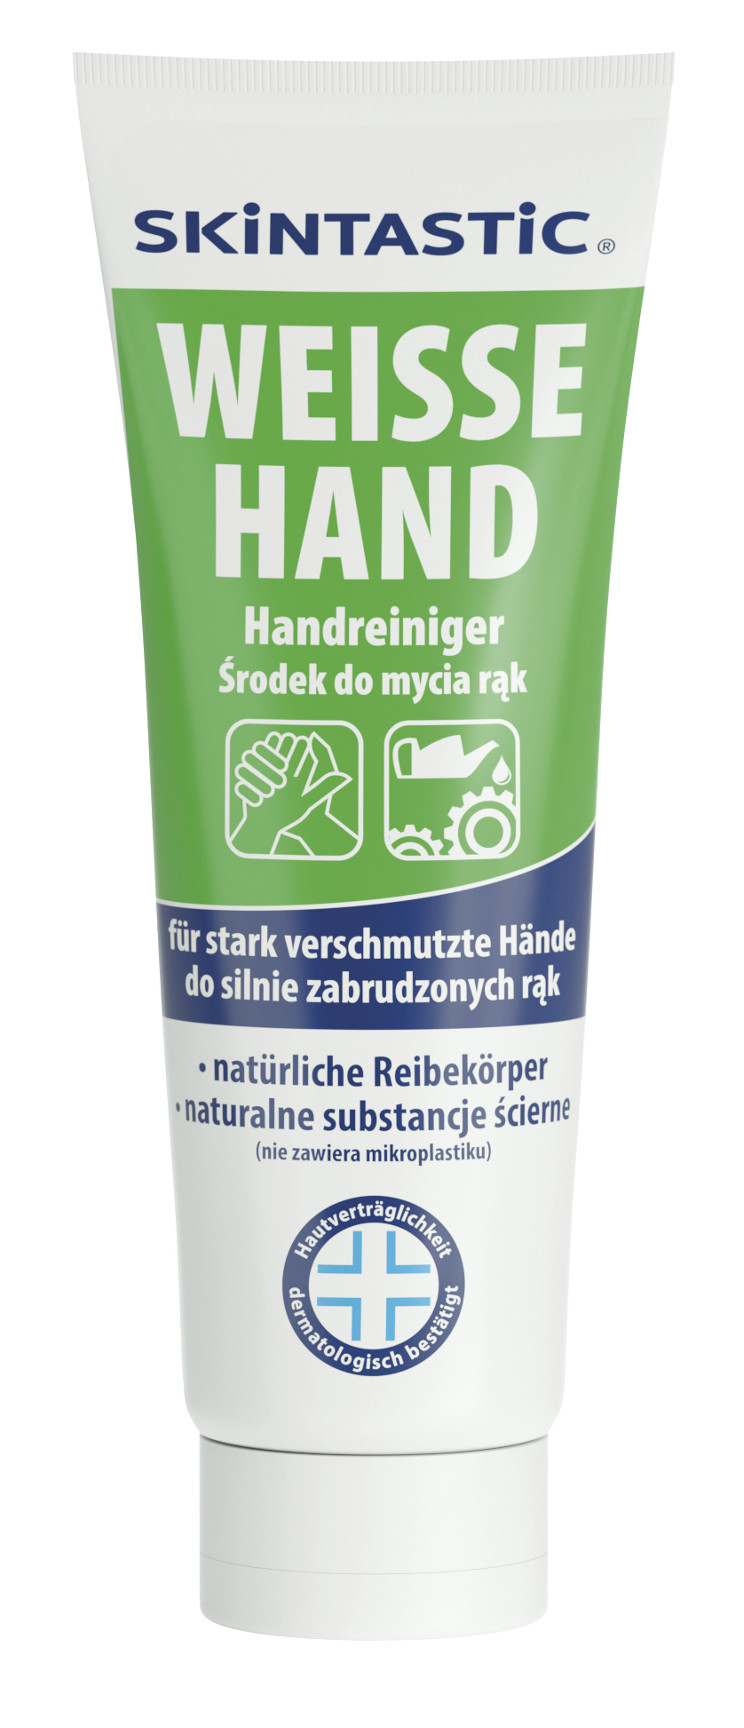 Skintastic Weiße Hand Hautreinigungscreme, mit Reibekörpern, 1 Tube, 250 ml